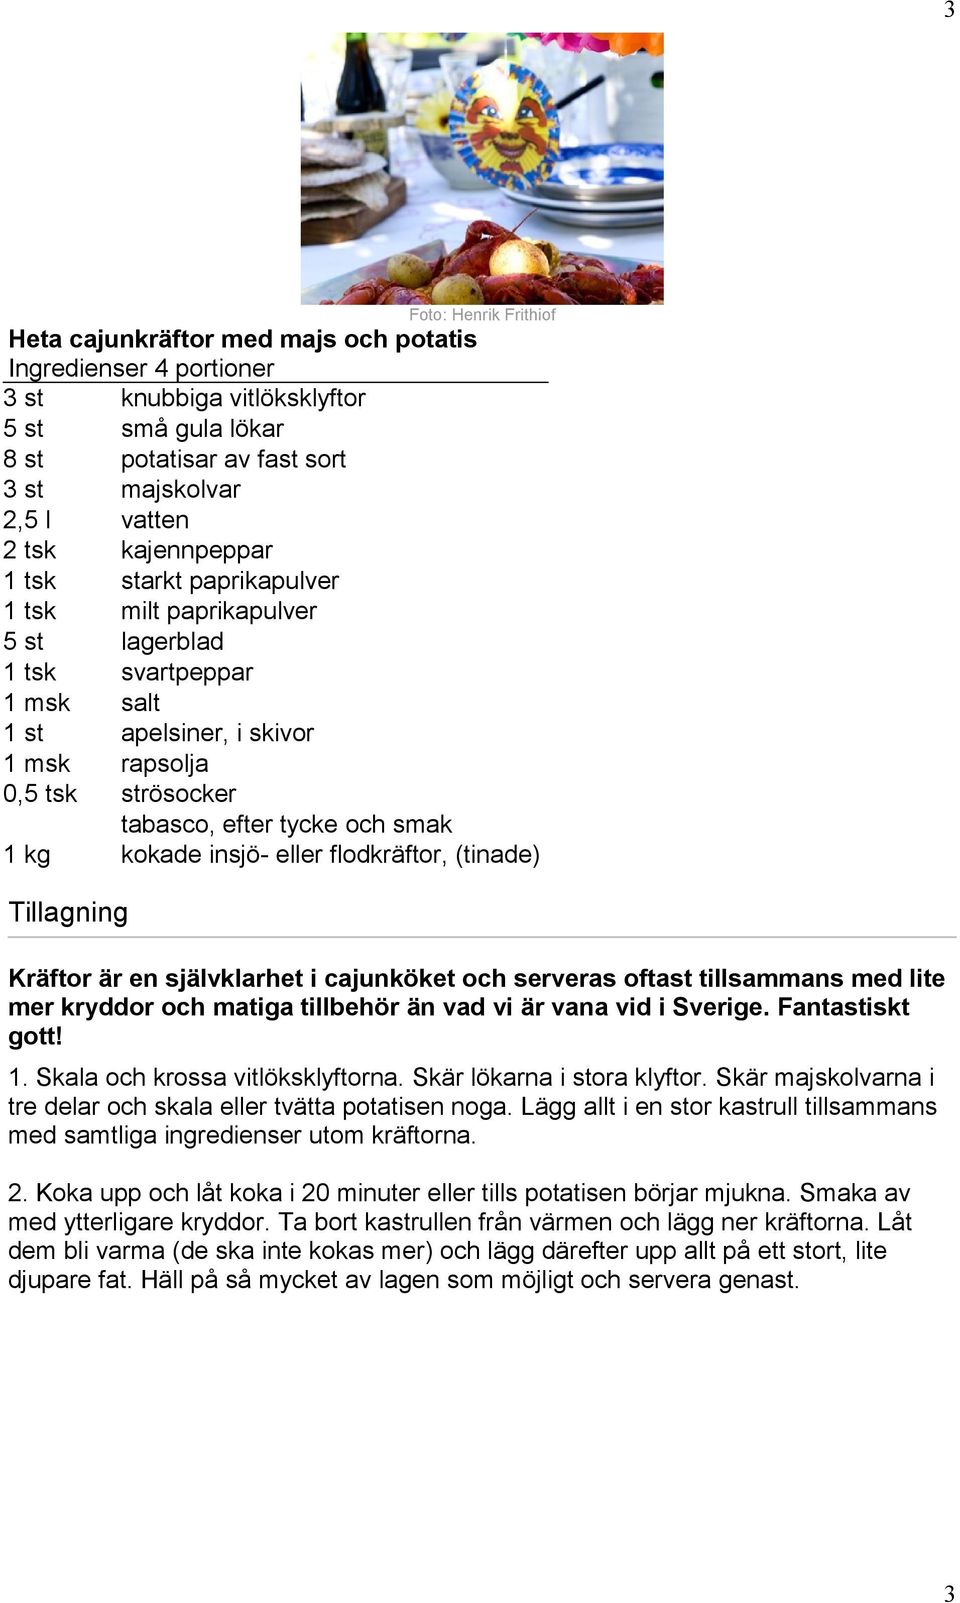 kg kokade insjö- eller flodkräftor, (tinade) Kräftor är en självklarhet i cajunköket och serveras oftast tillsammans med lite mer kryddor och matiga tillbehör än vad vi är vana vid i Sverige.